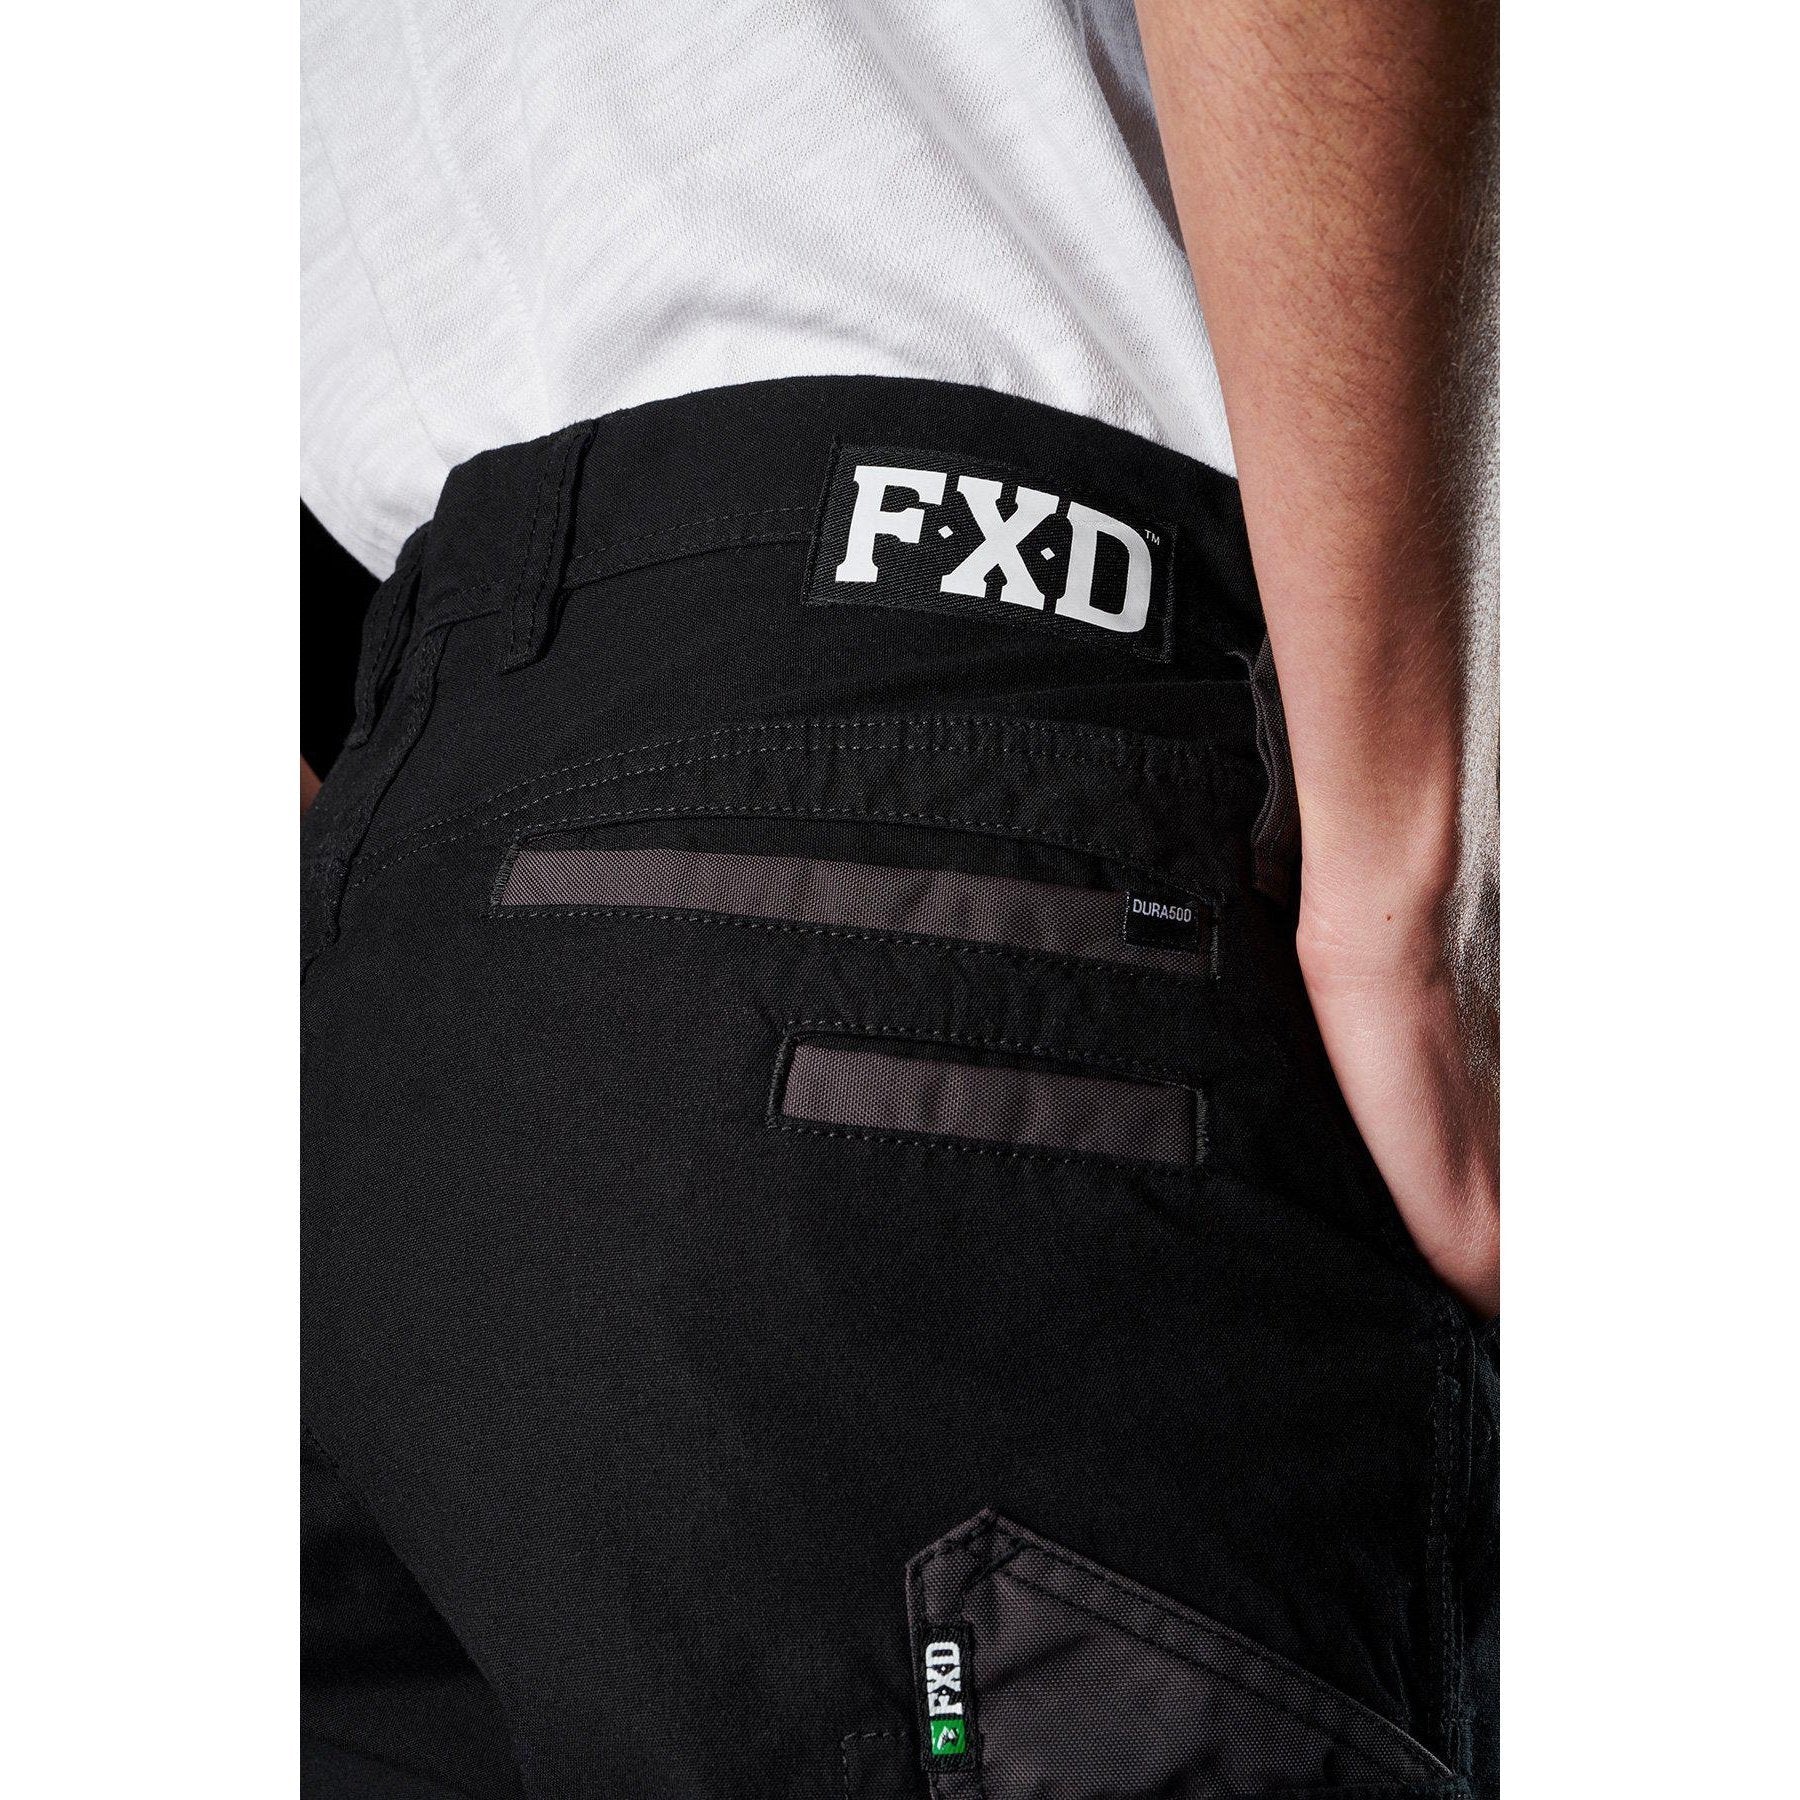 FXD Womens Stretch Work Pants - WP-3W | Womens Workwear